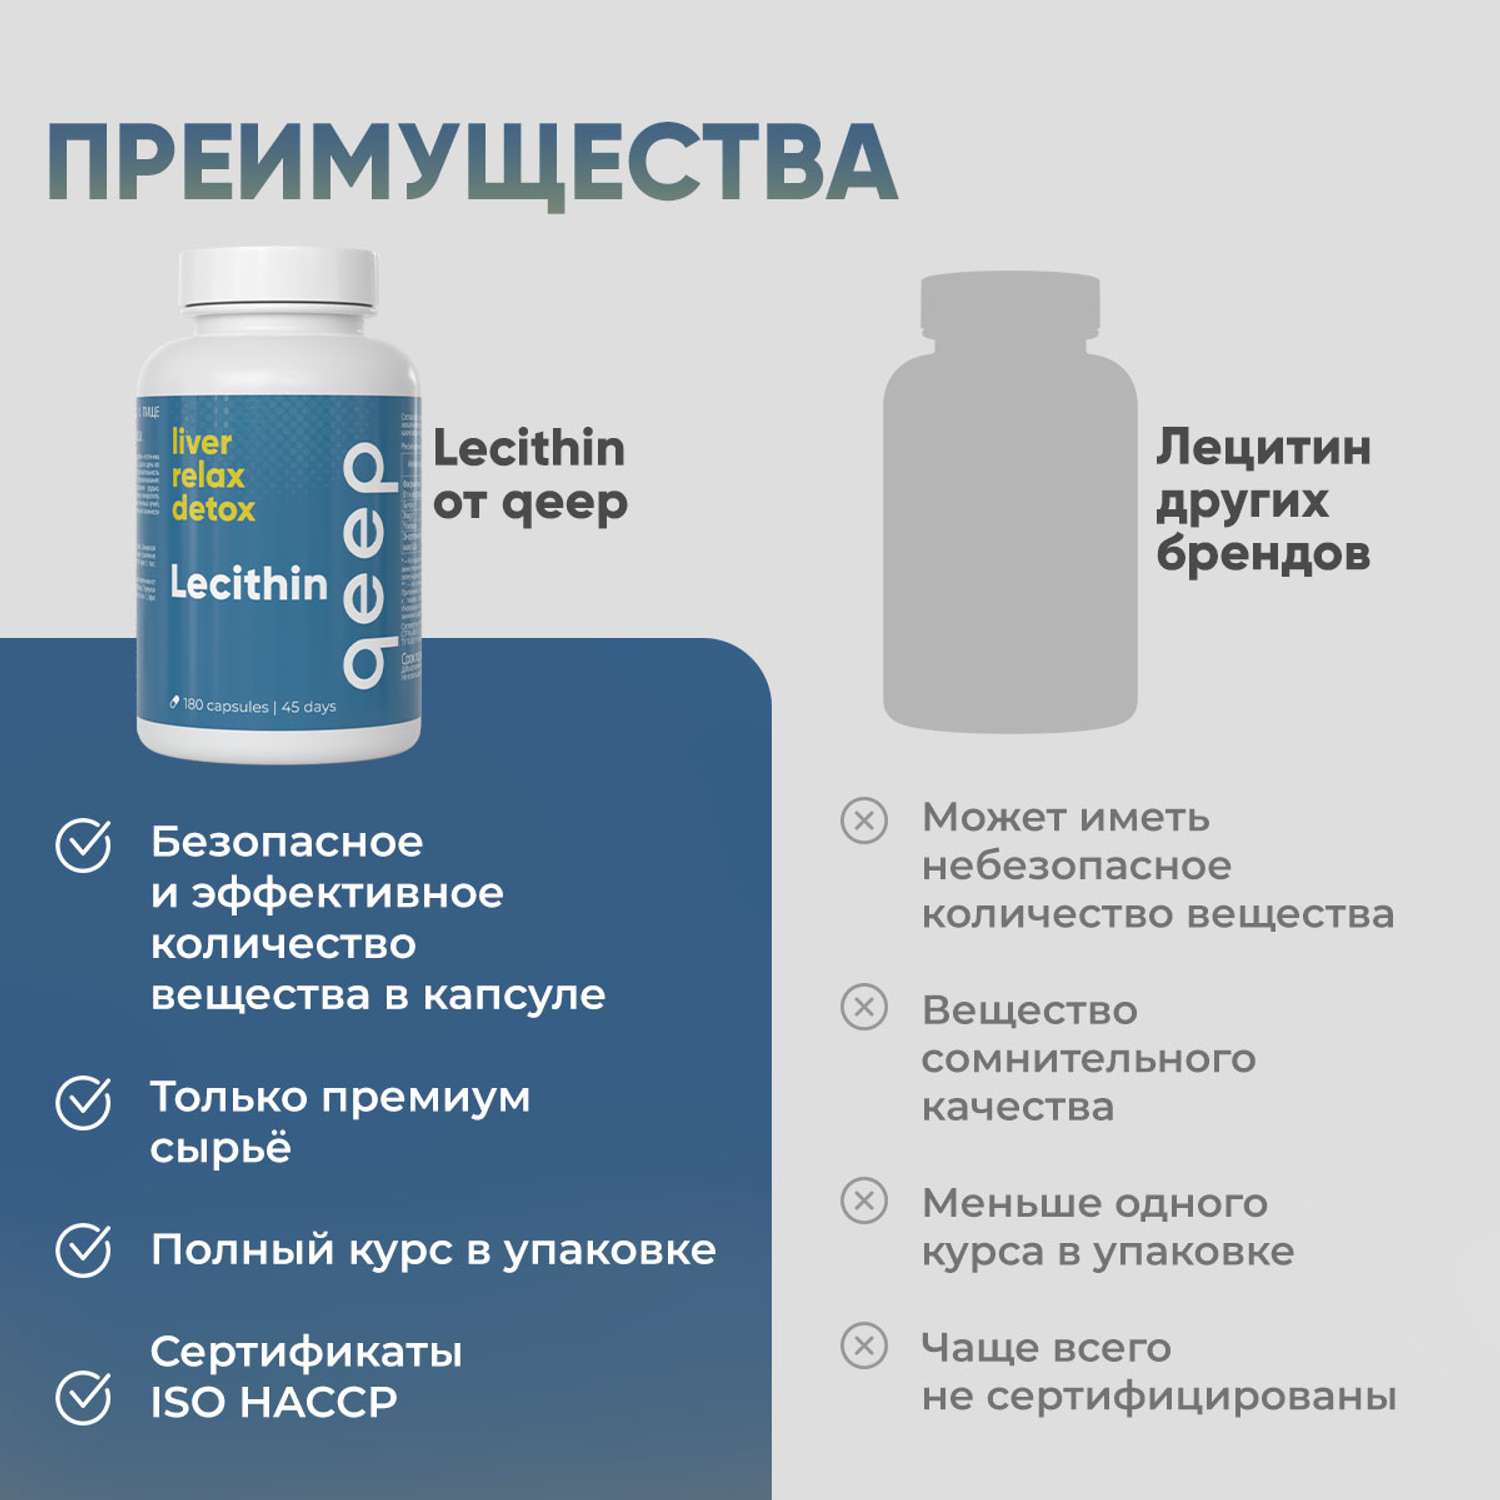 Лецитин подсолнечный qeep витамины для похудения и печени - фото 6